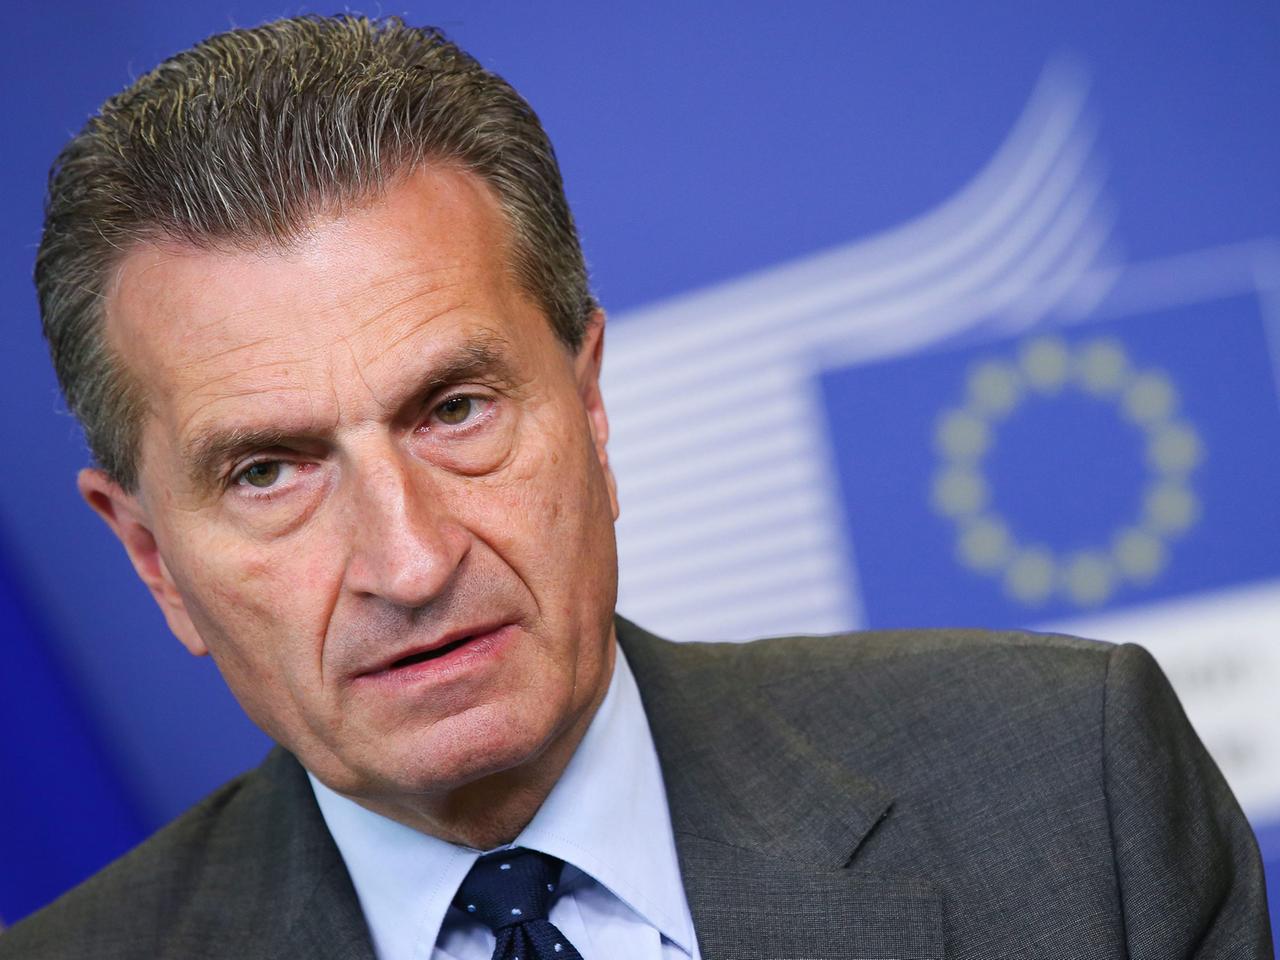 EU-Energiekommissar Günther Oettinger während einer Pressekonferenz am 24. Juni 2014 in der EU-Kommission in Brüssel, Belgien